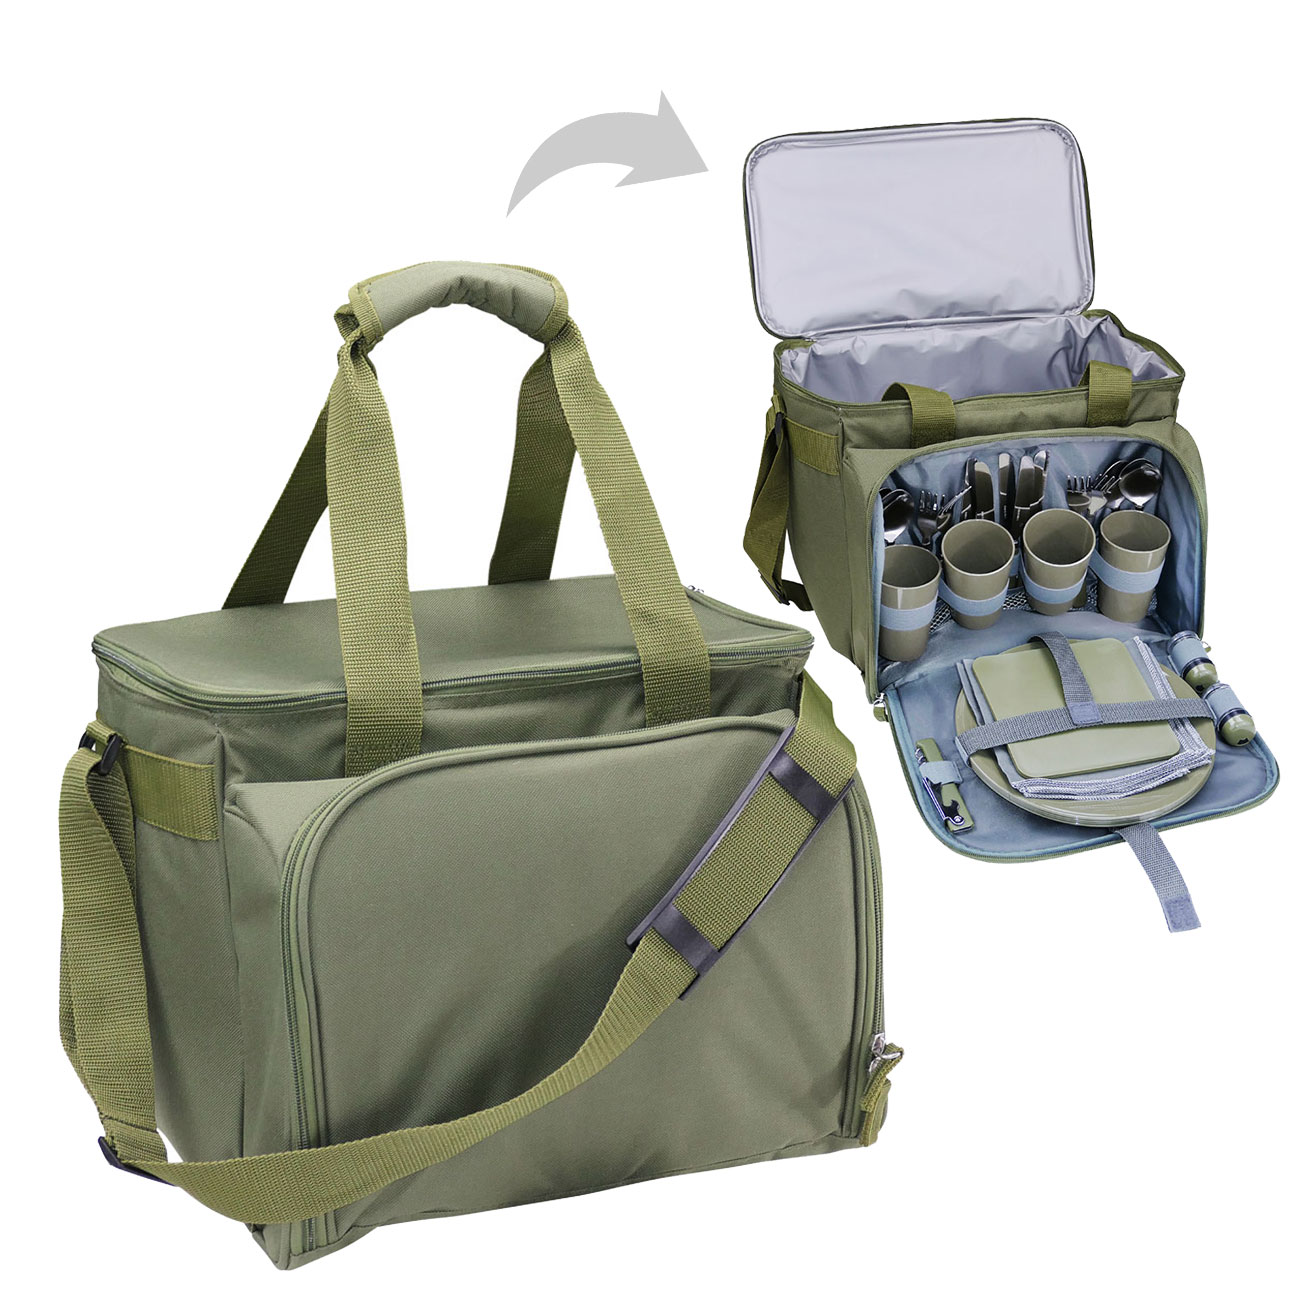 Kühltasche, Picknicktasche Premium 19 Ltr., 23x35x24cm, isoliert